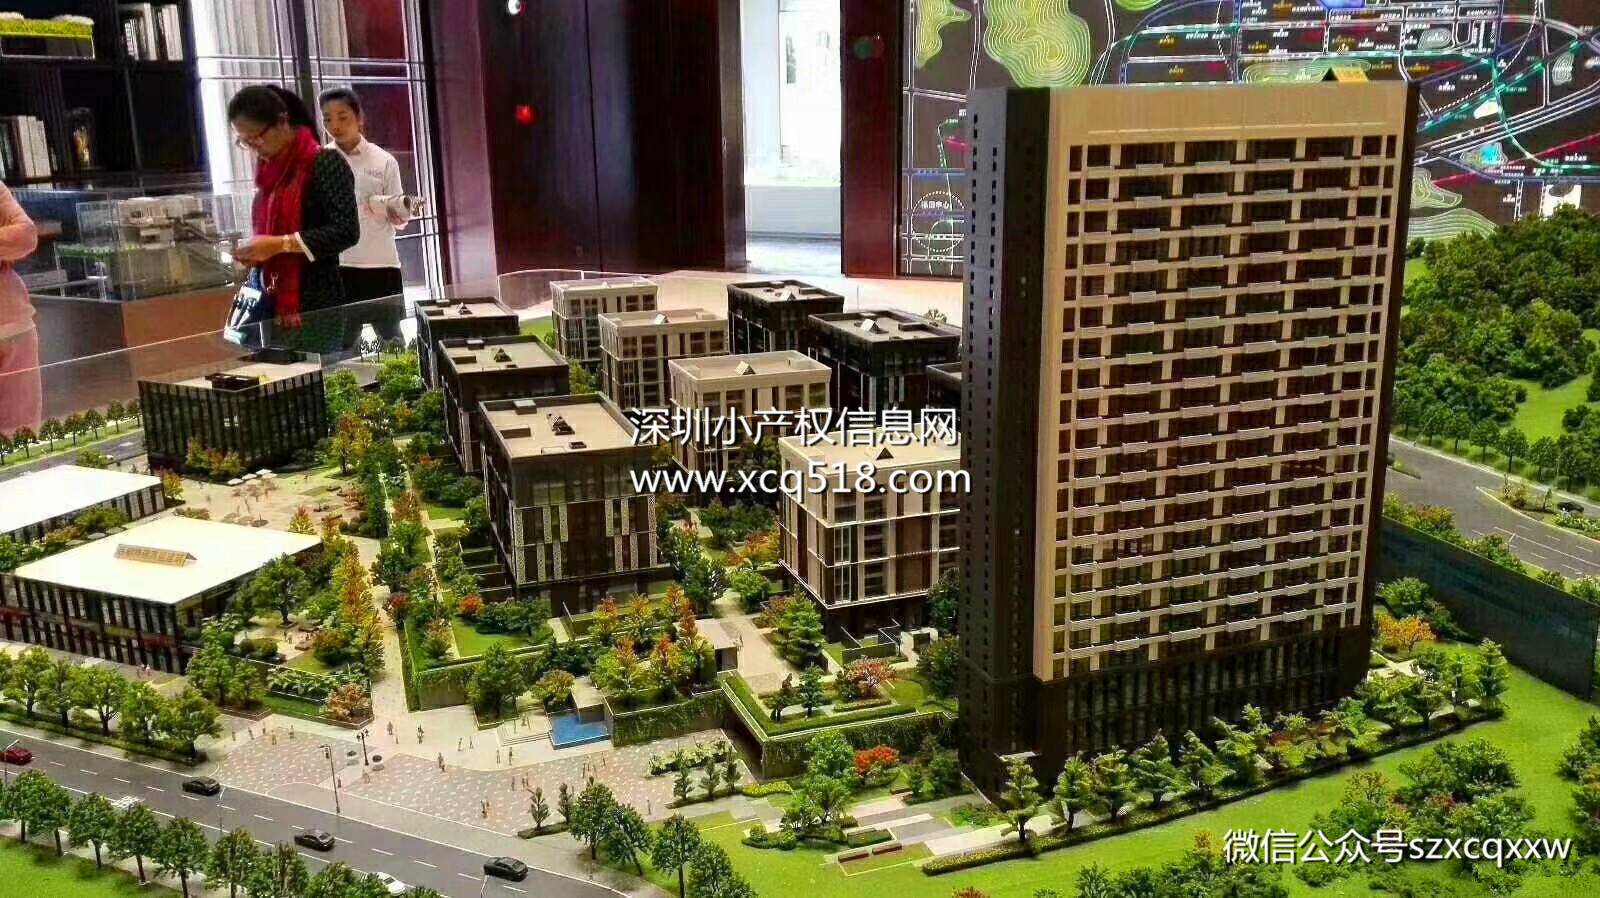 龙岗中心【时代公寓】11栋大型花园社区 精装新房发售 76.8万/套起